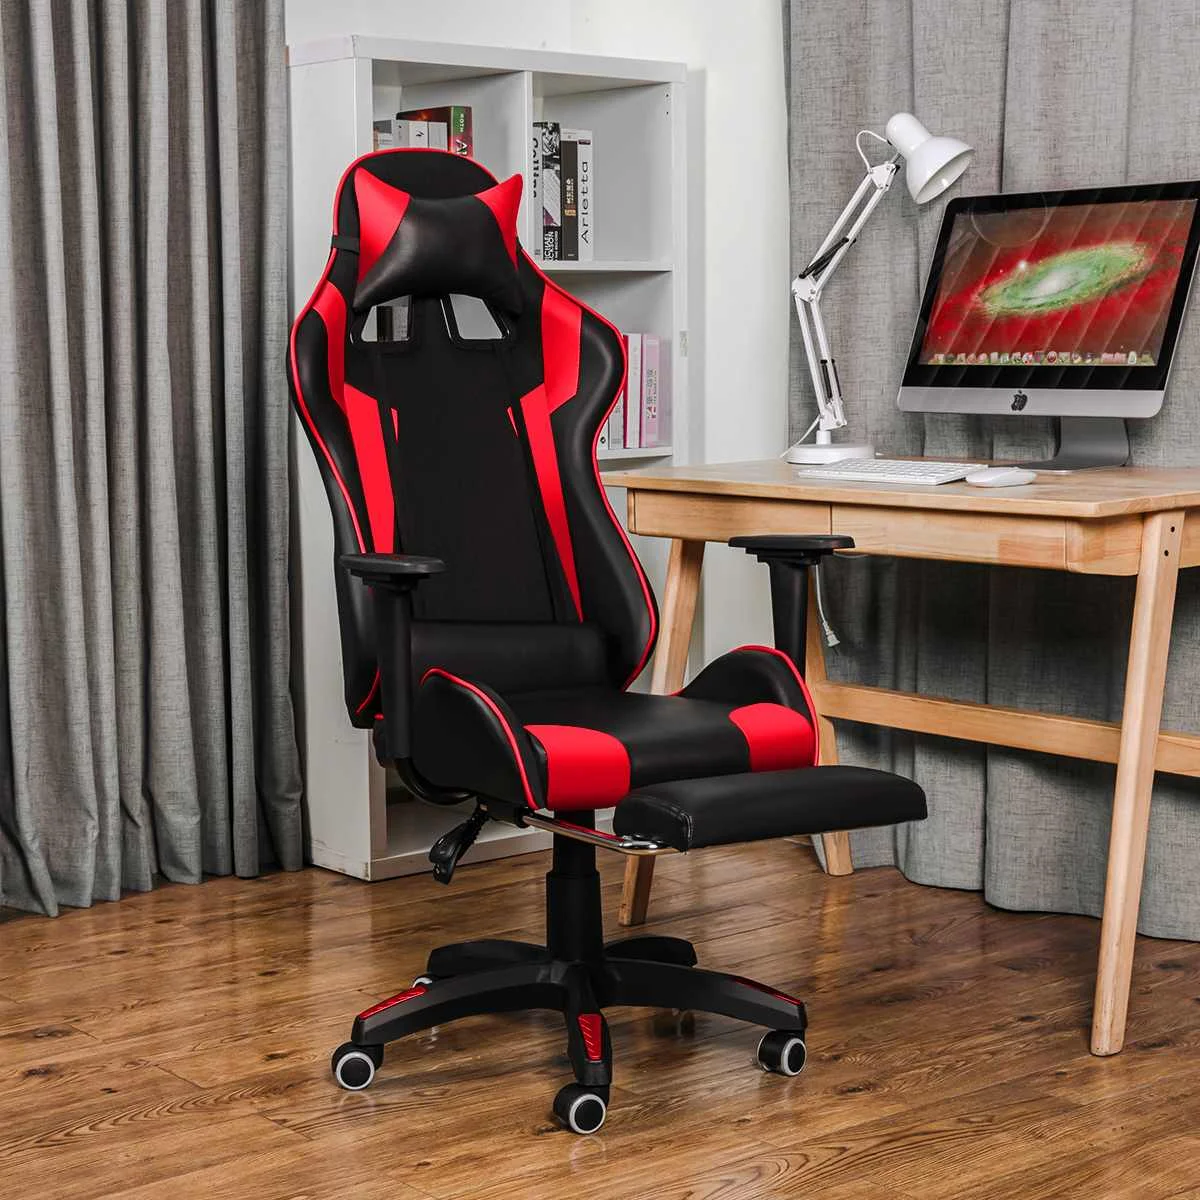 

Игровое кресло для дома, Интернет, офиса, эргономичное кожаное настольное кресло, игровое компьютерное кресло для WCG, сверхмощное игровое кр...